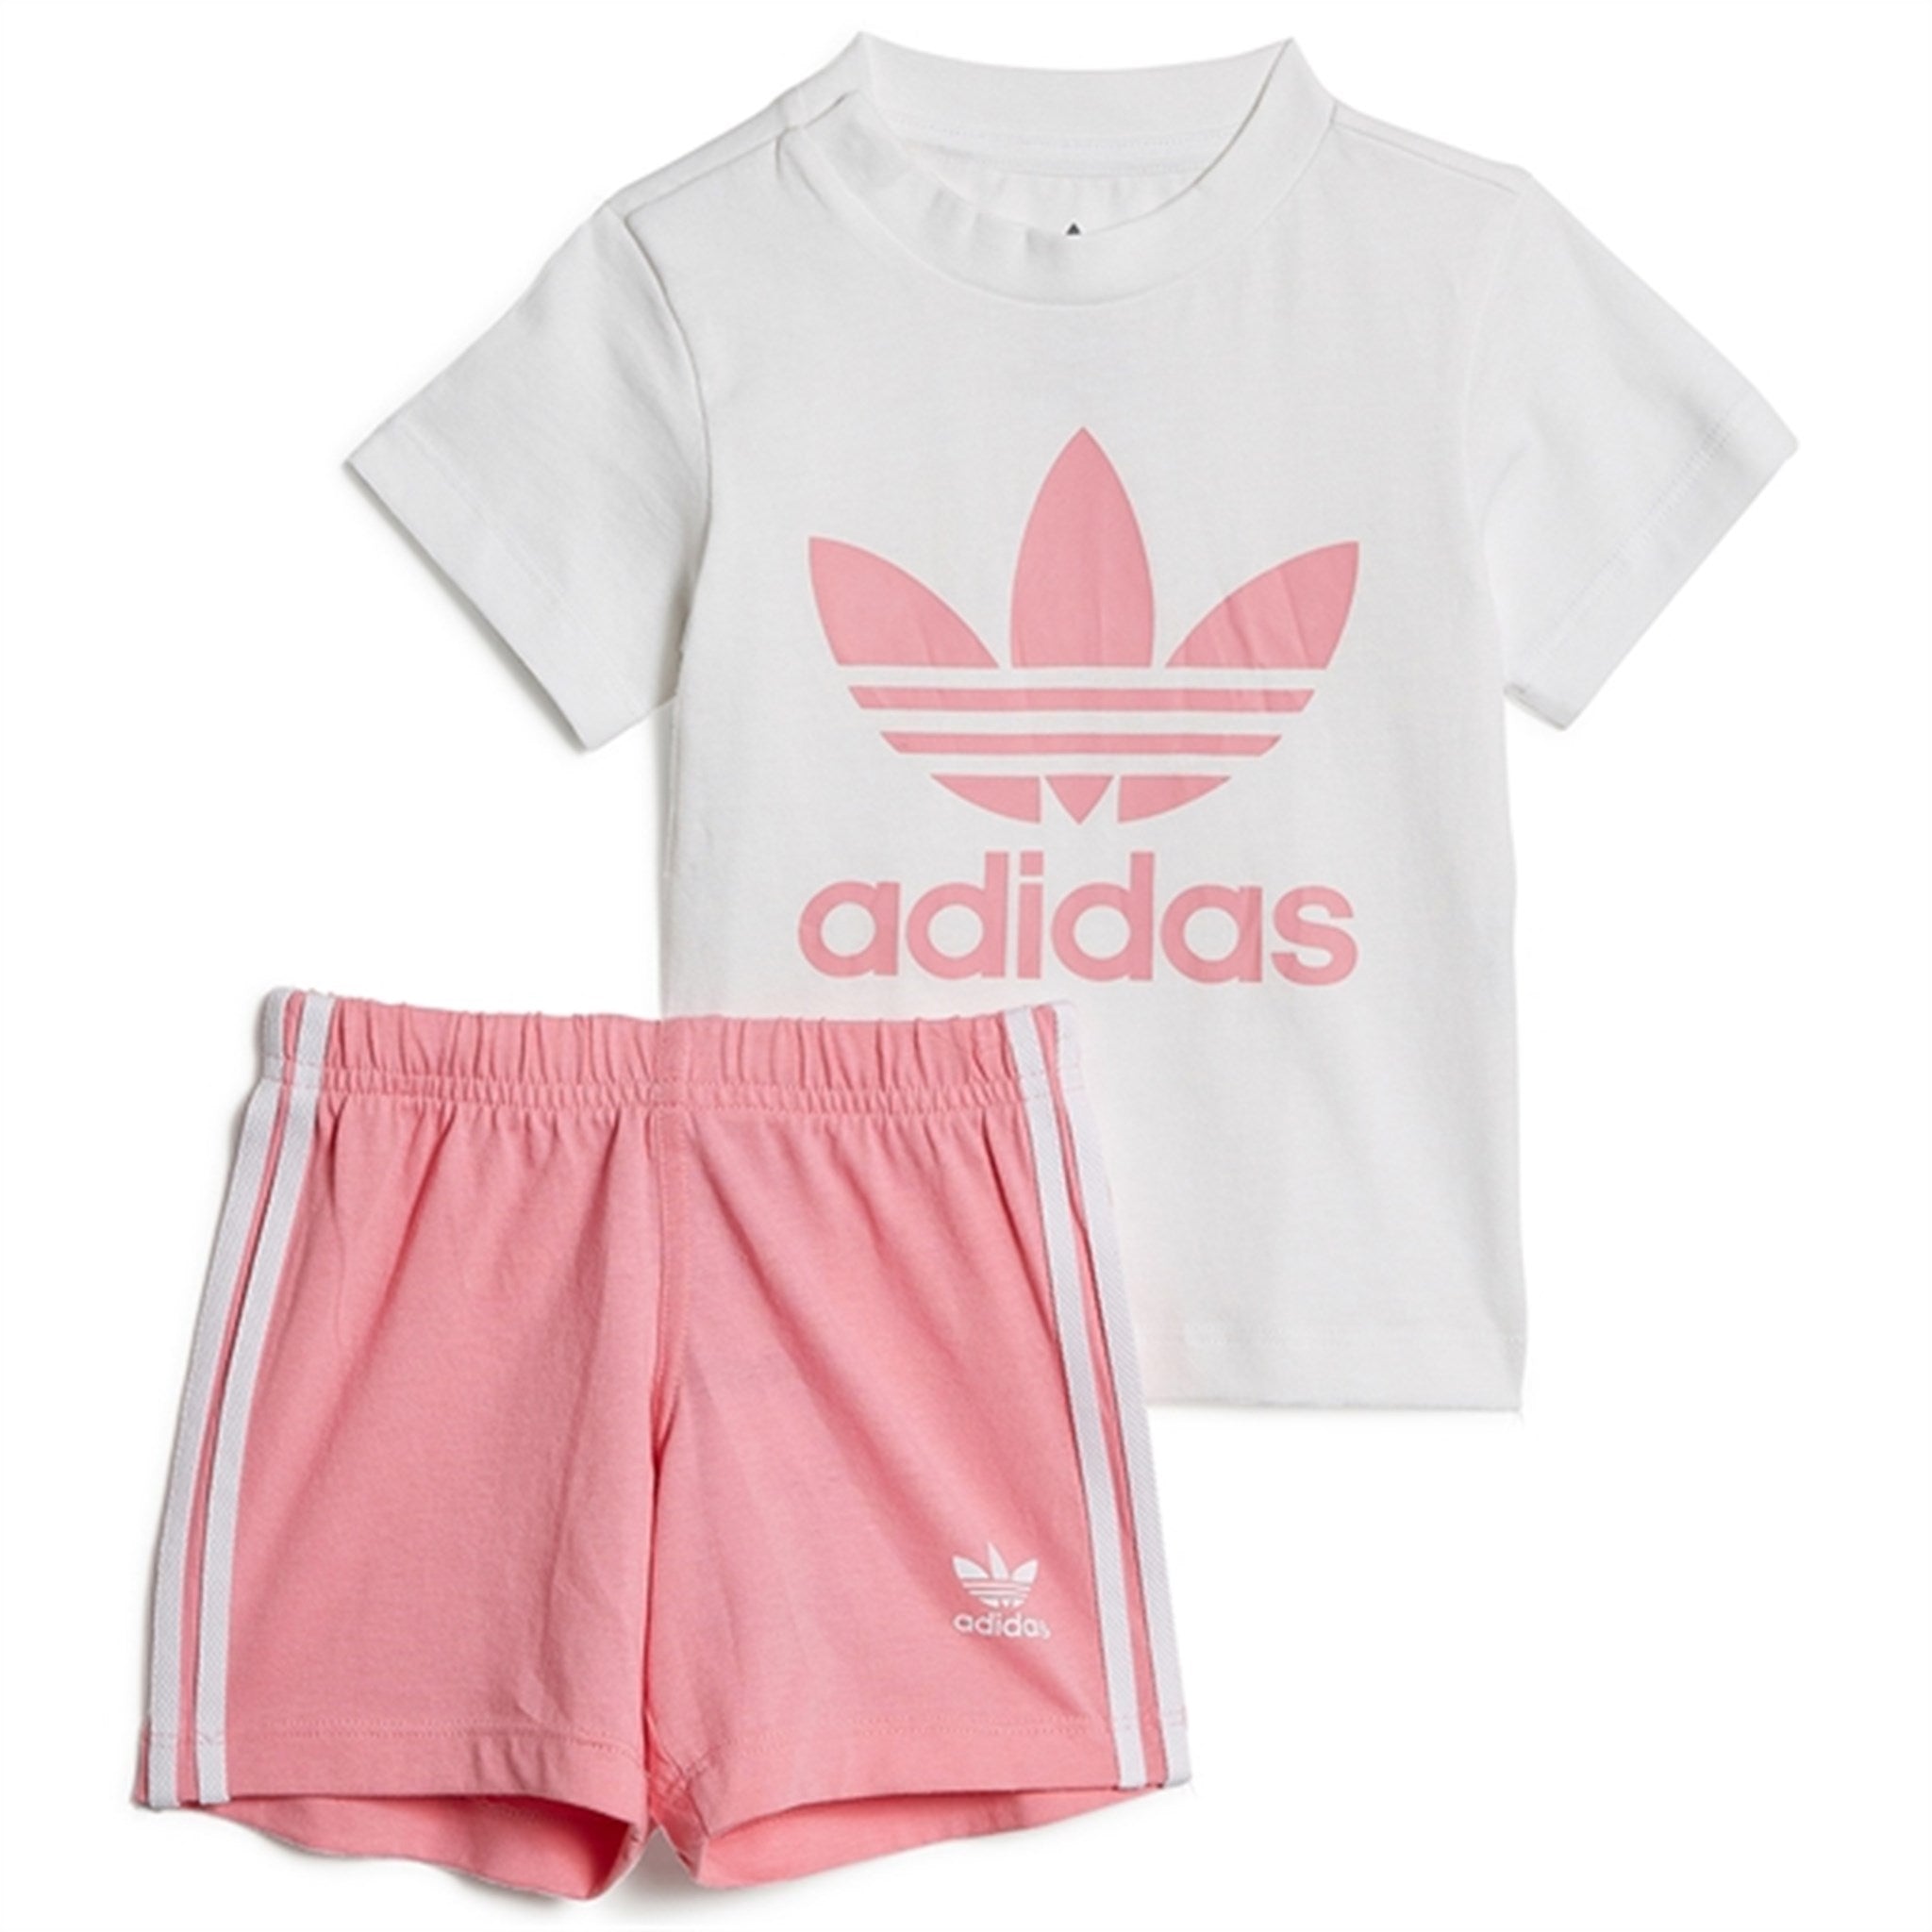 adidas Originals White / Pink Shorts Tee Set